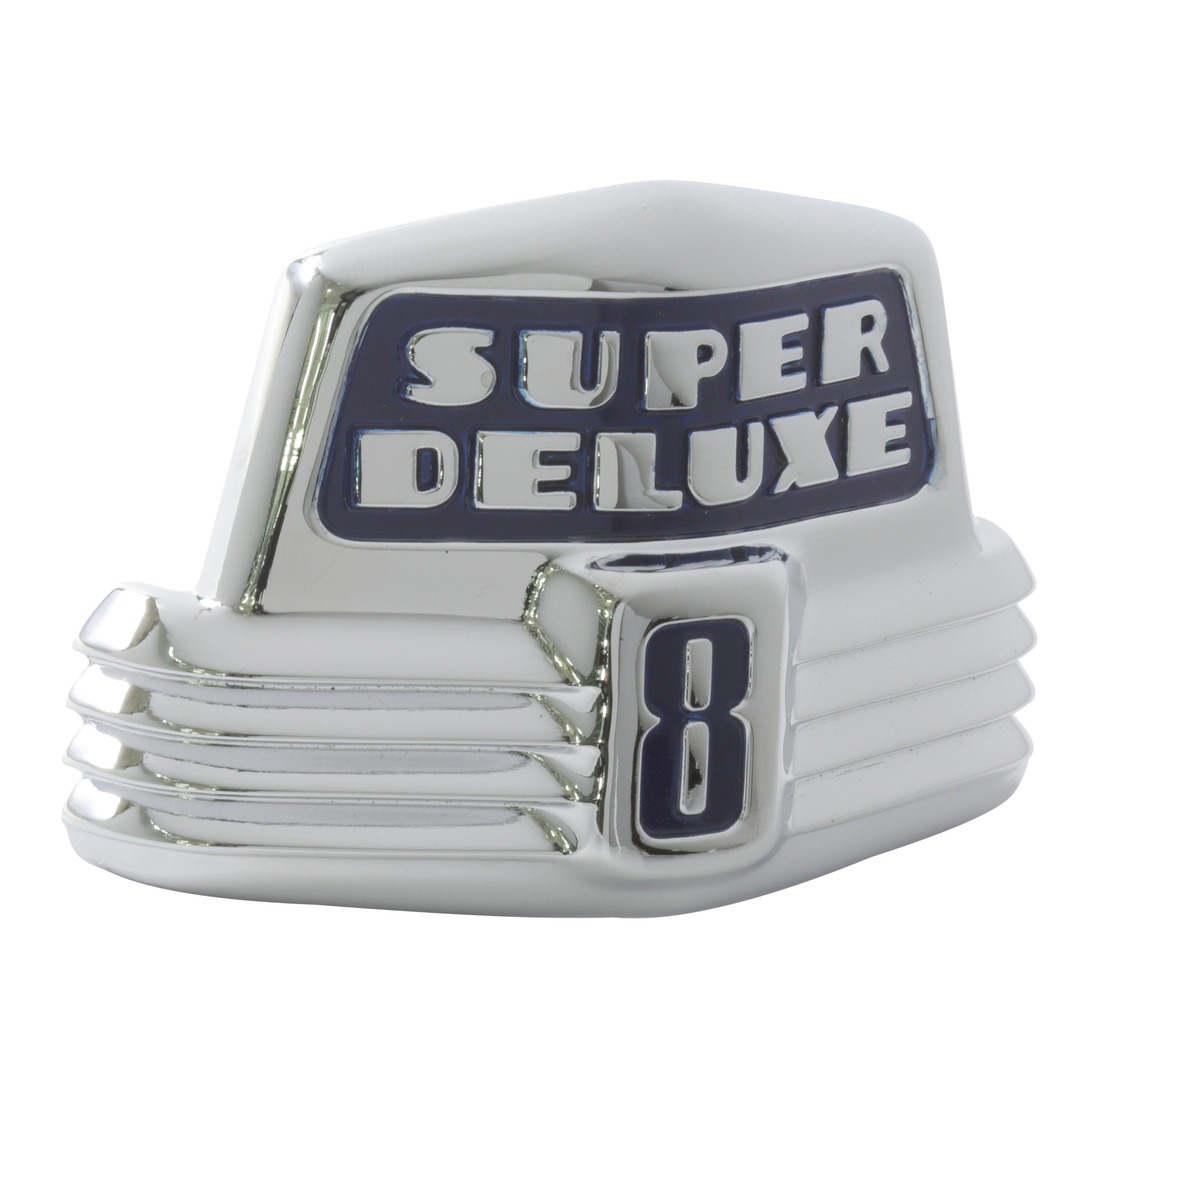 Bonnet/Hood Emblems - Super Deluxe 8 - 1947-48 pas